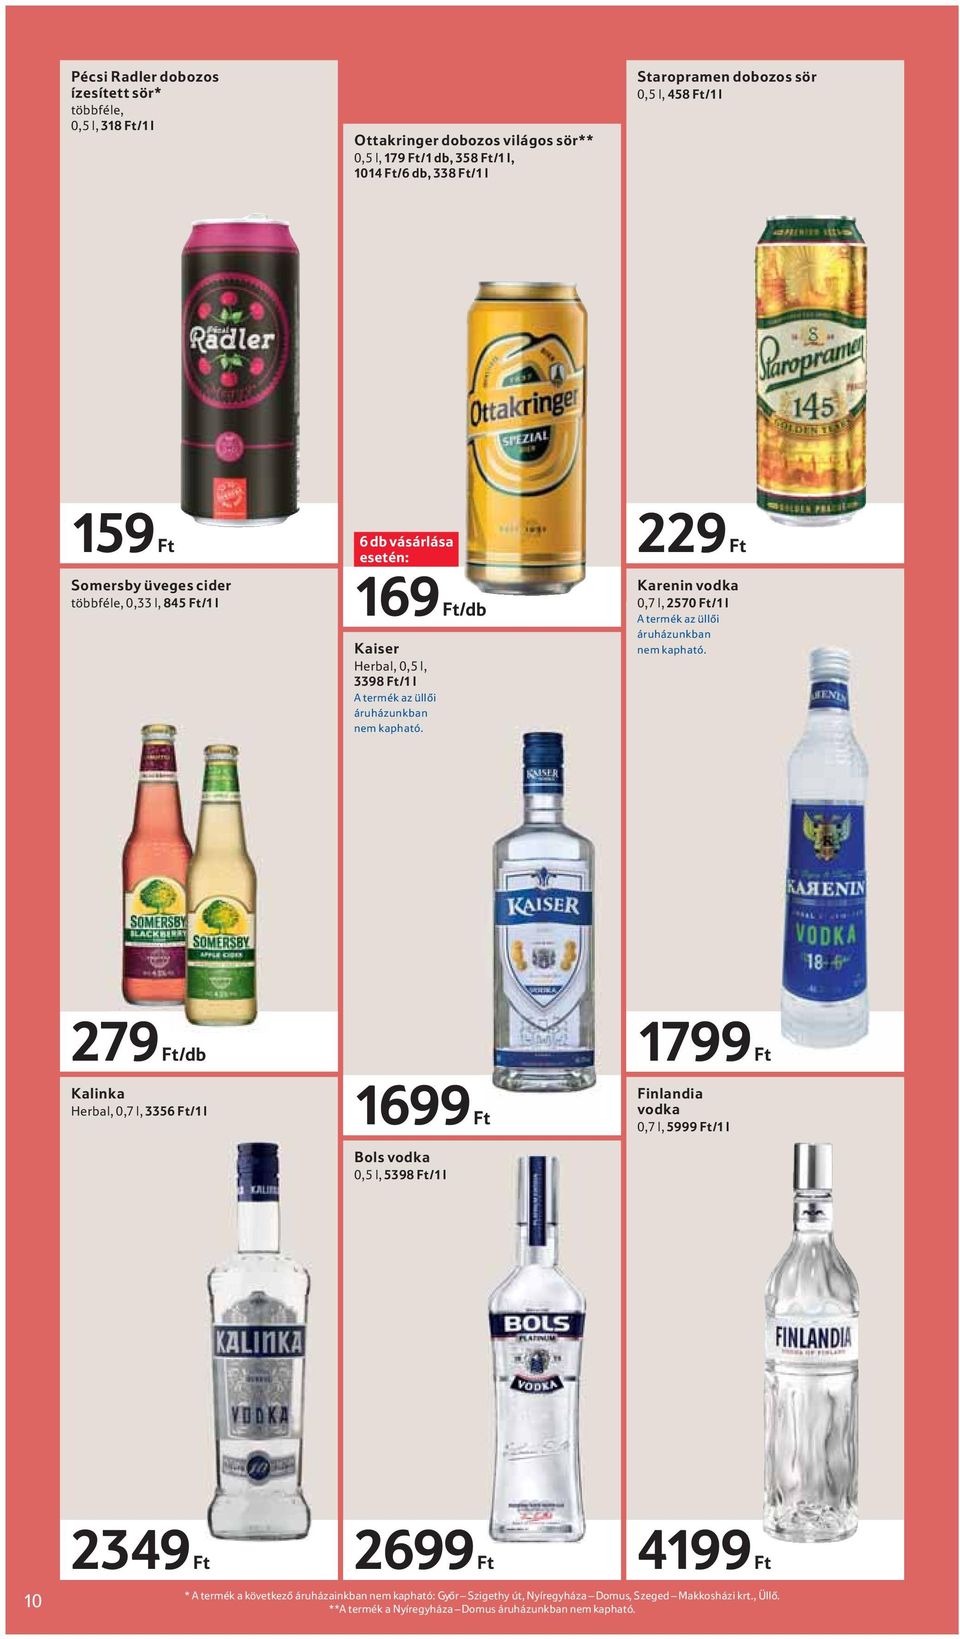 229 Ft Karenin vodka 0,7 l, 2570 Ft/1 l A termék az üllői áruházunkban nem kapható.